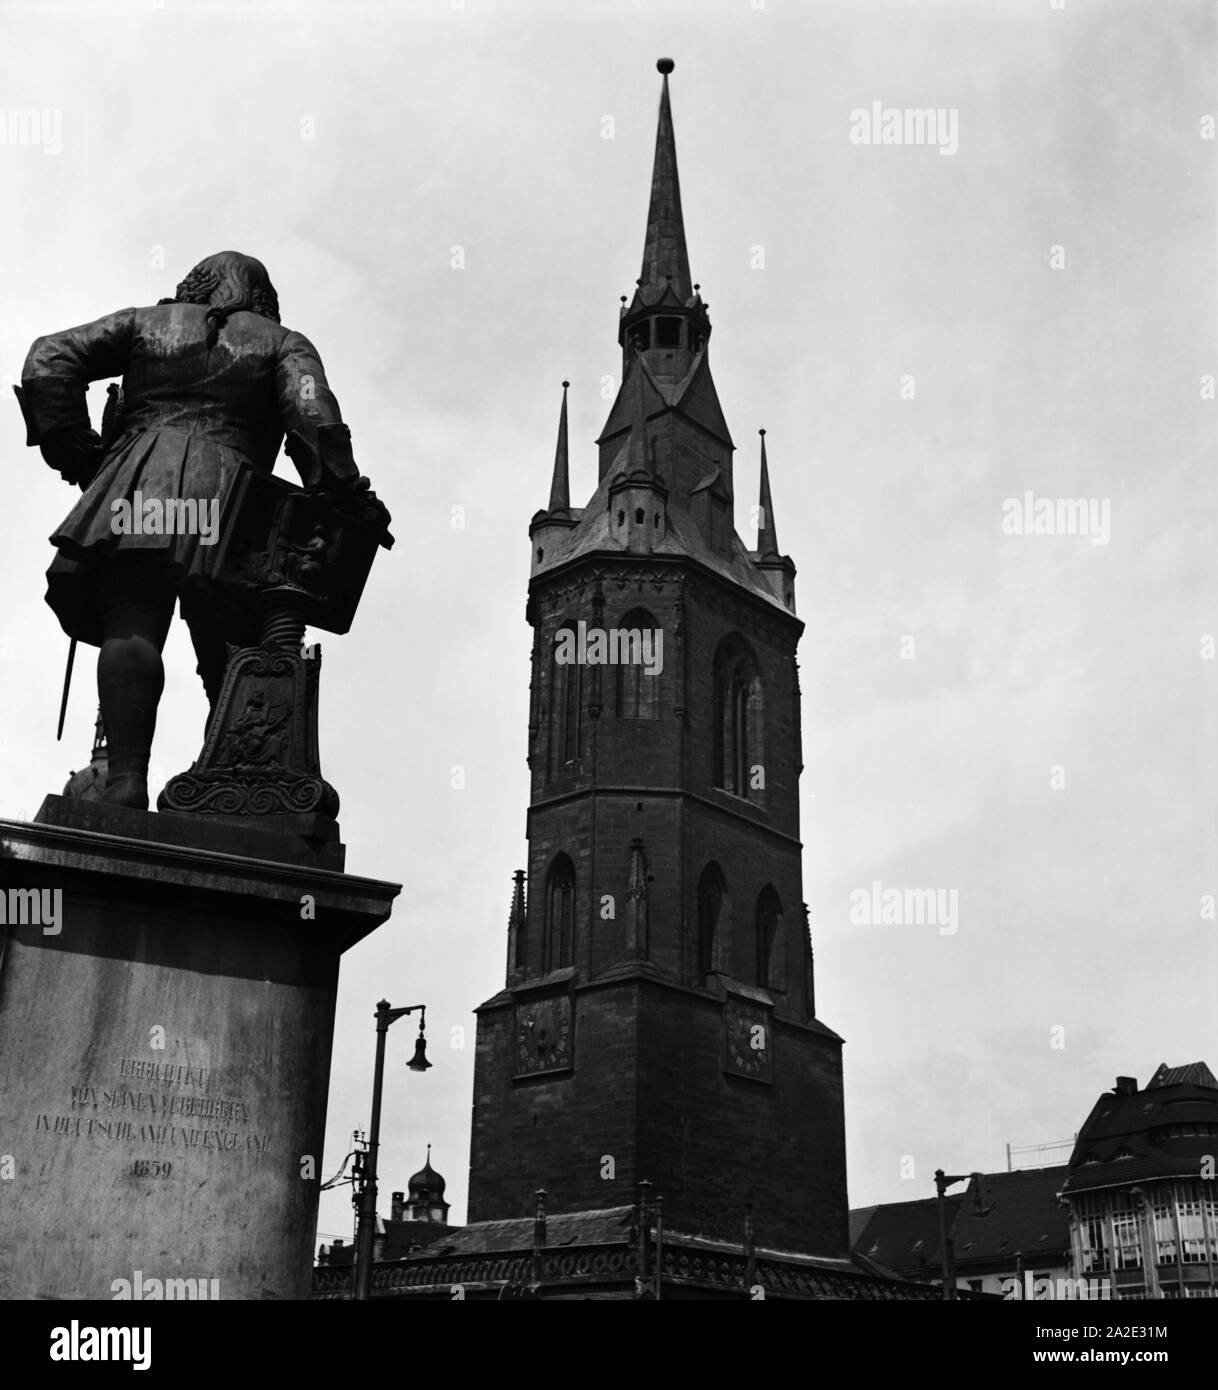 Rückseite des Händel Denkmals und Roter Turm de Halle an der Saale, Allemagne Allemagne Années 1930 er Jahre. L'arrière du monument Haendel et Roter Turm beffroi de la ville de Halle, Allemagne 1930. Banque D'Images